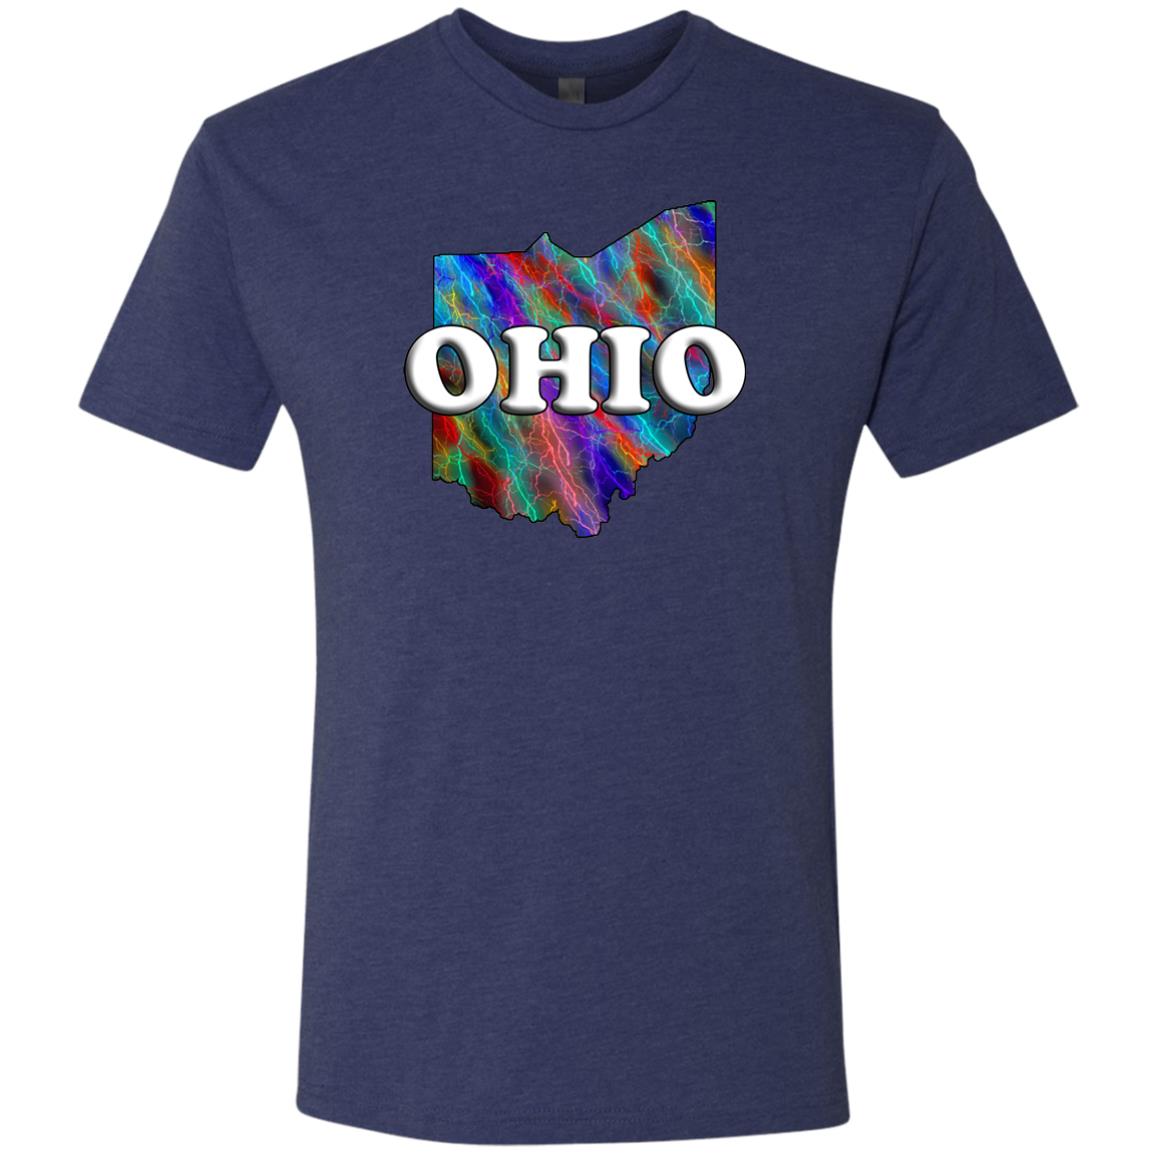 Ohio State T-Shirt